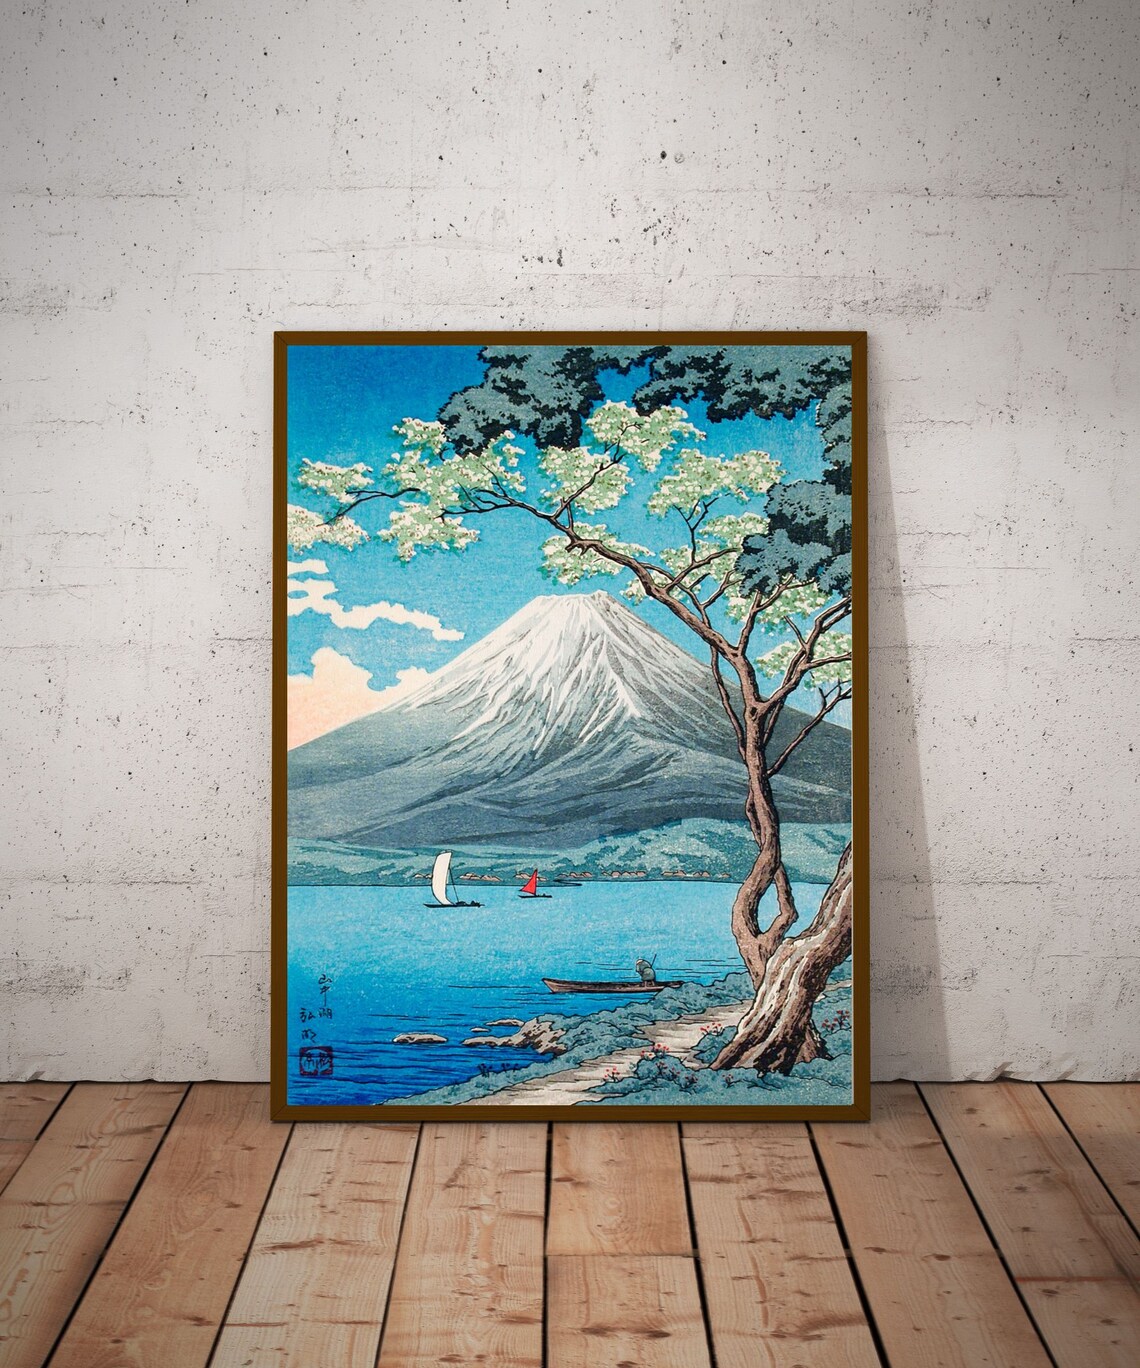 Mount Fuji from Lake Yamanaka Hiroaki Takahashi Japanese | Etsy